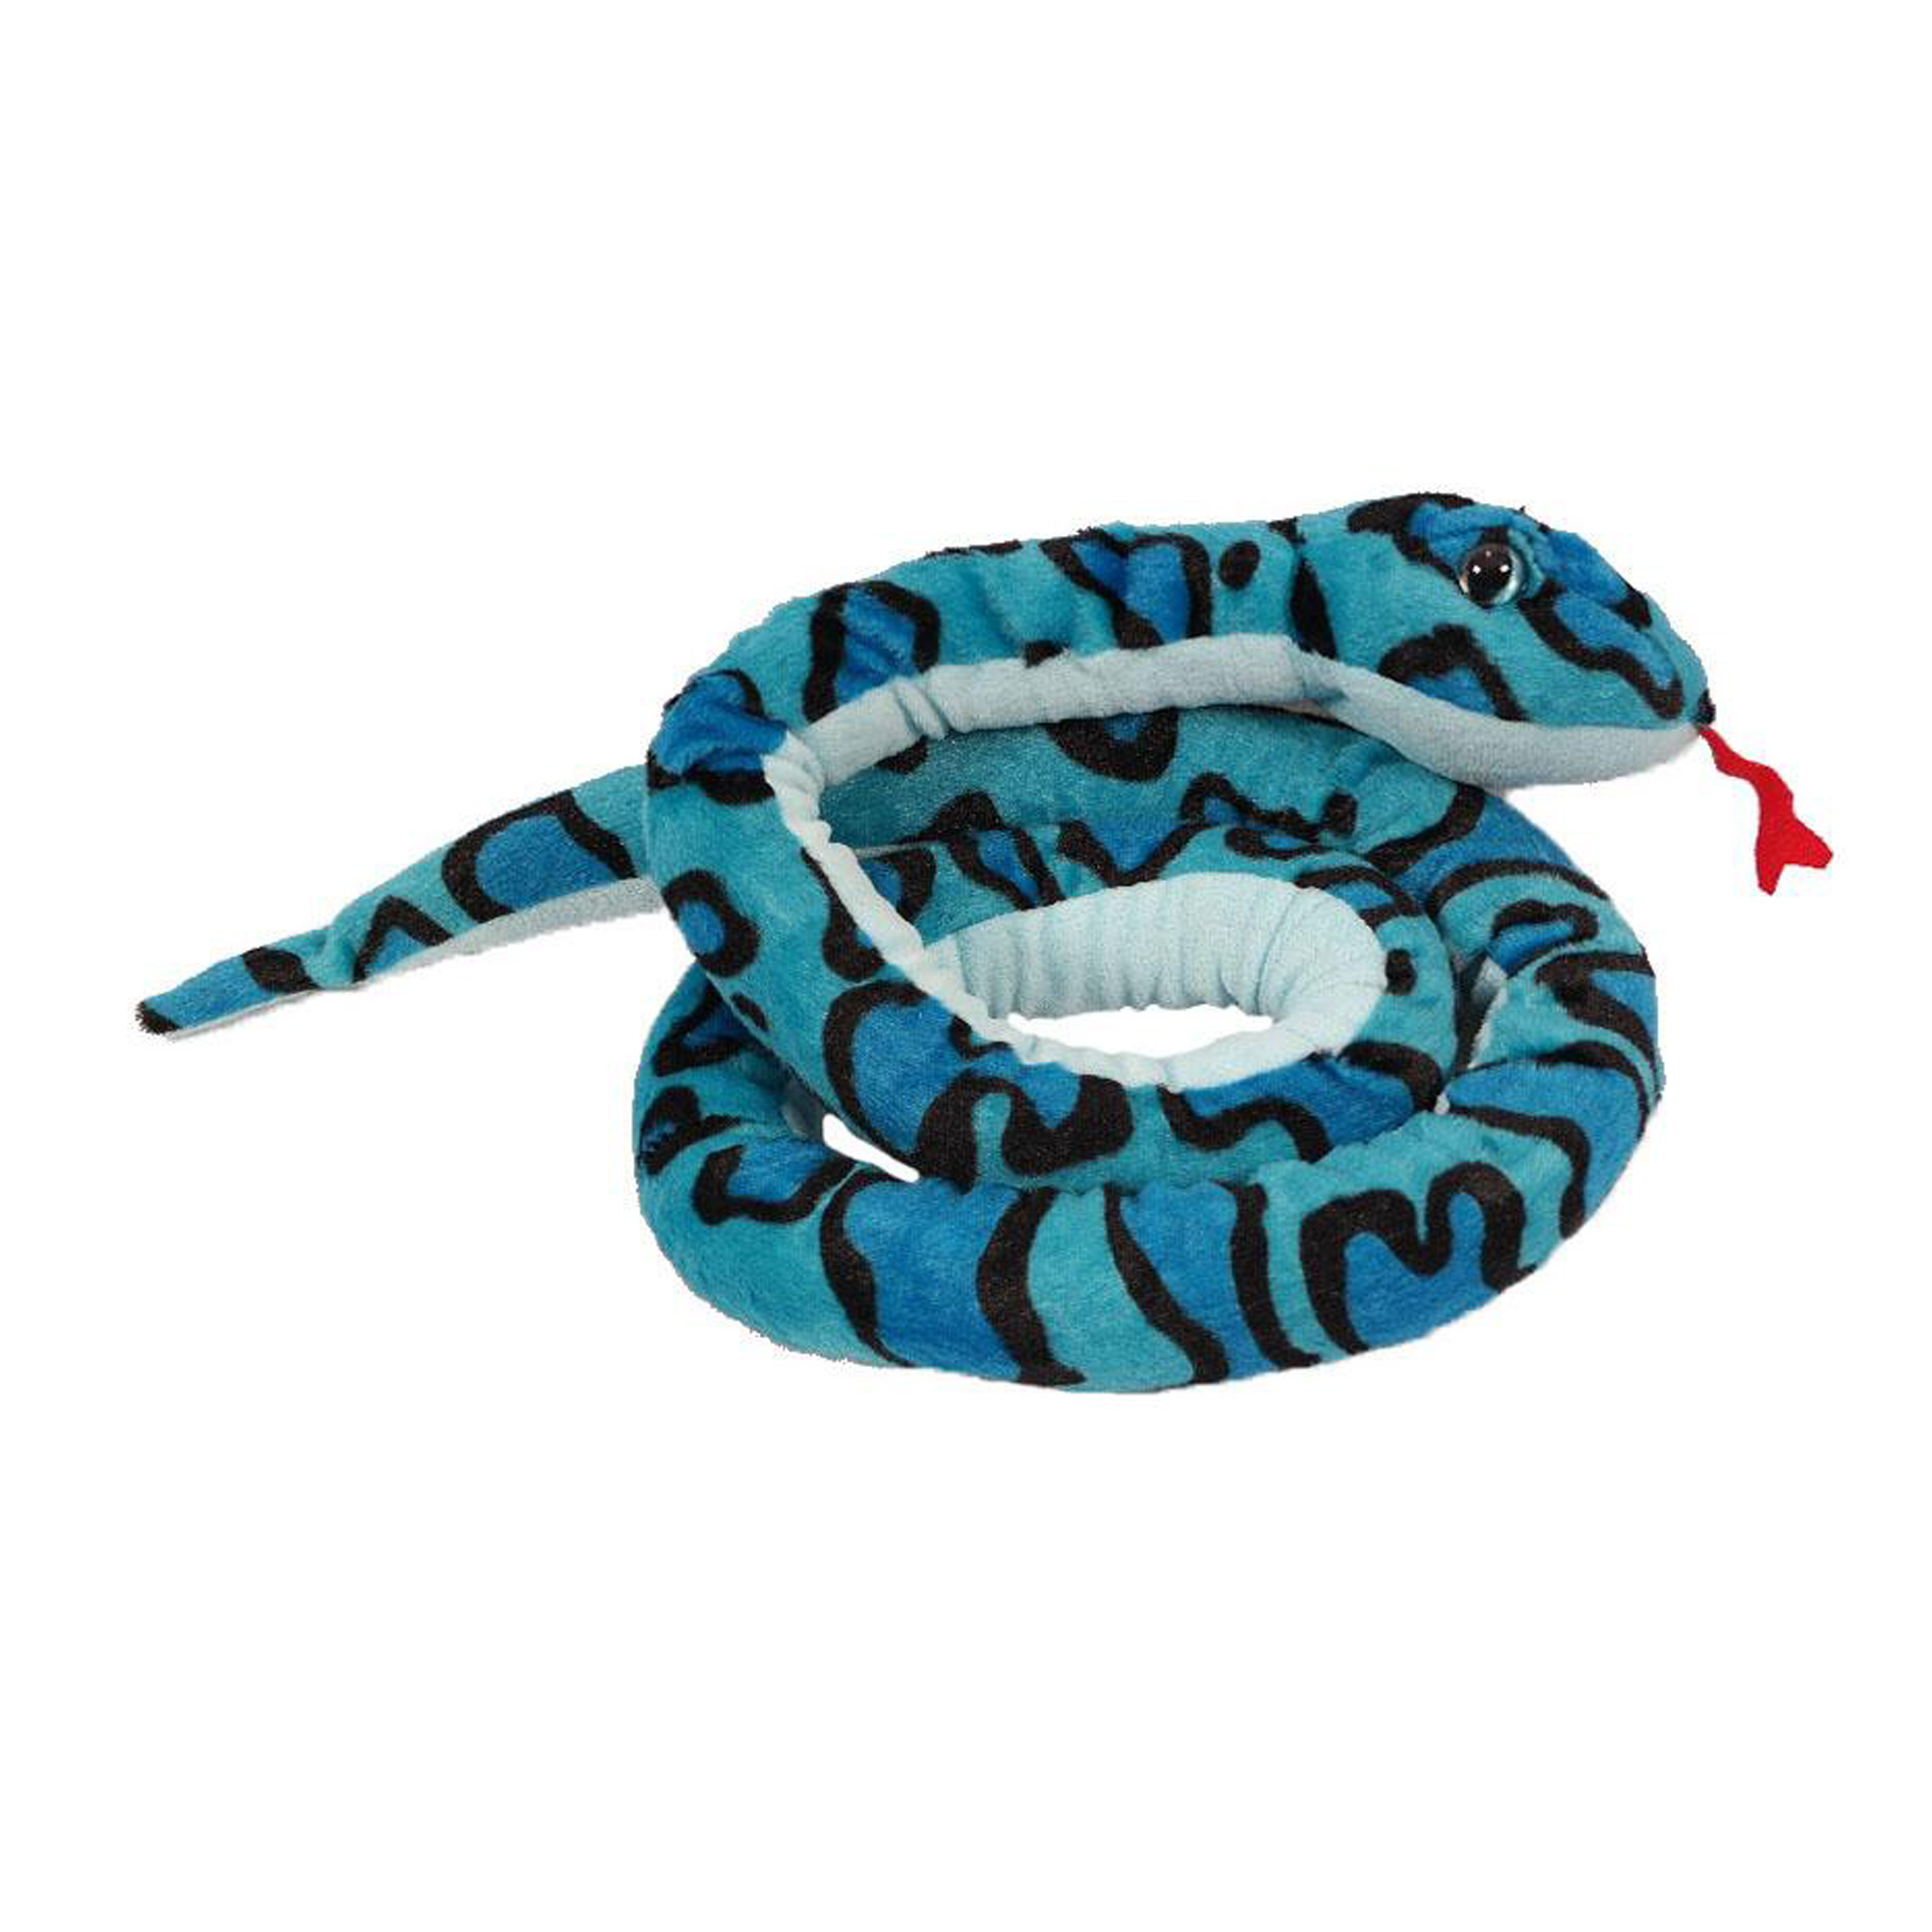 Knuffeldier Boomslang zachte pluche stof blauw premium kwaliteit knuffels 250 cm